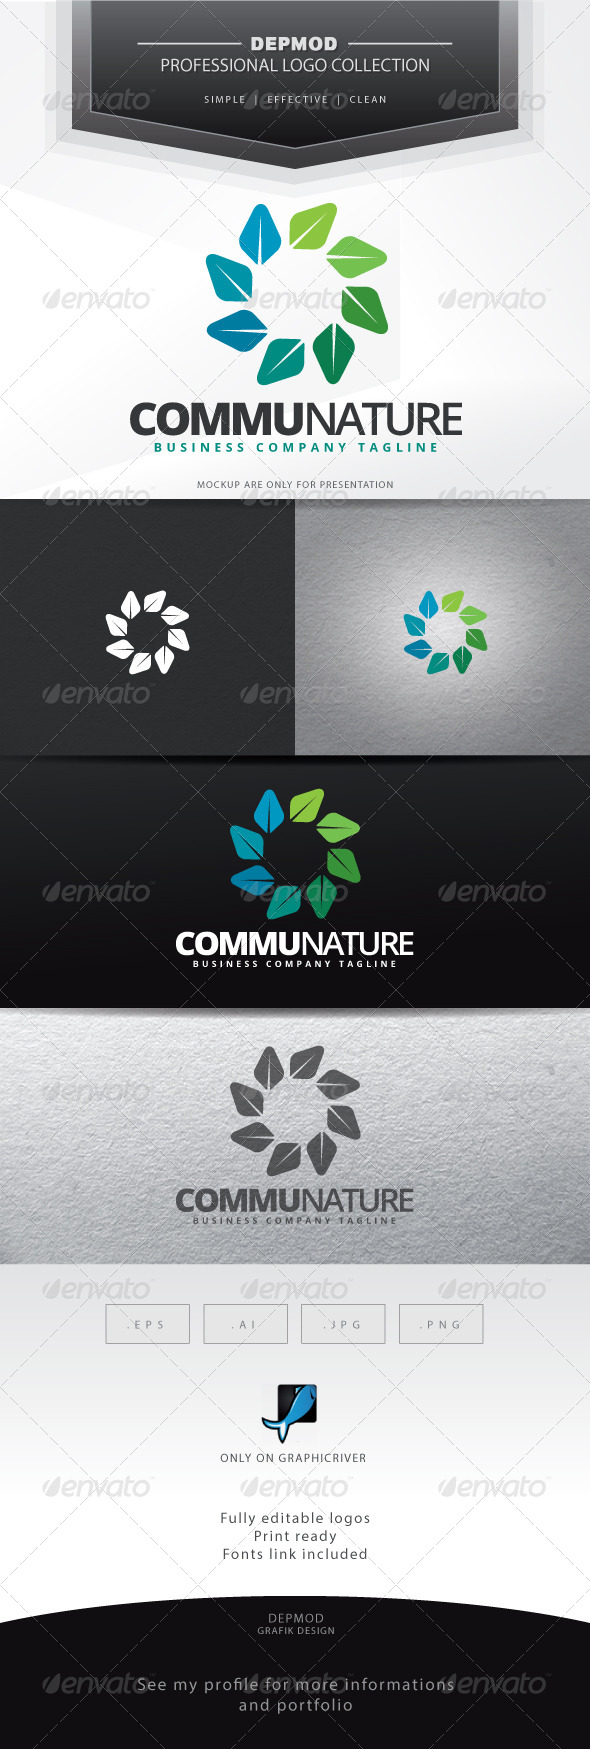 Communature Logo